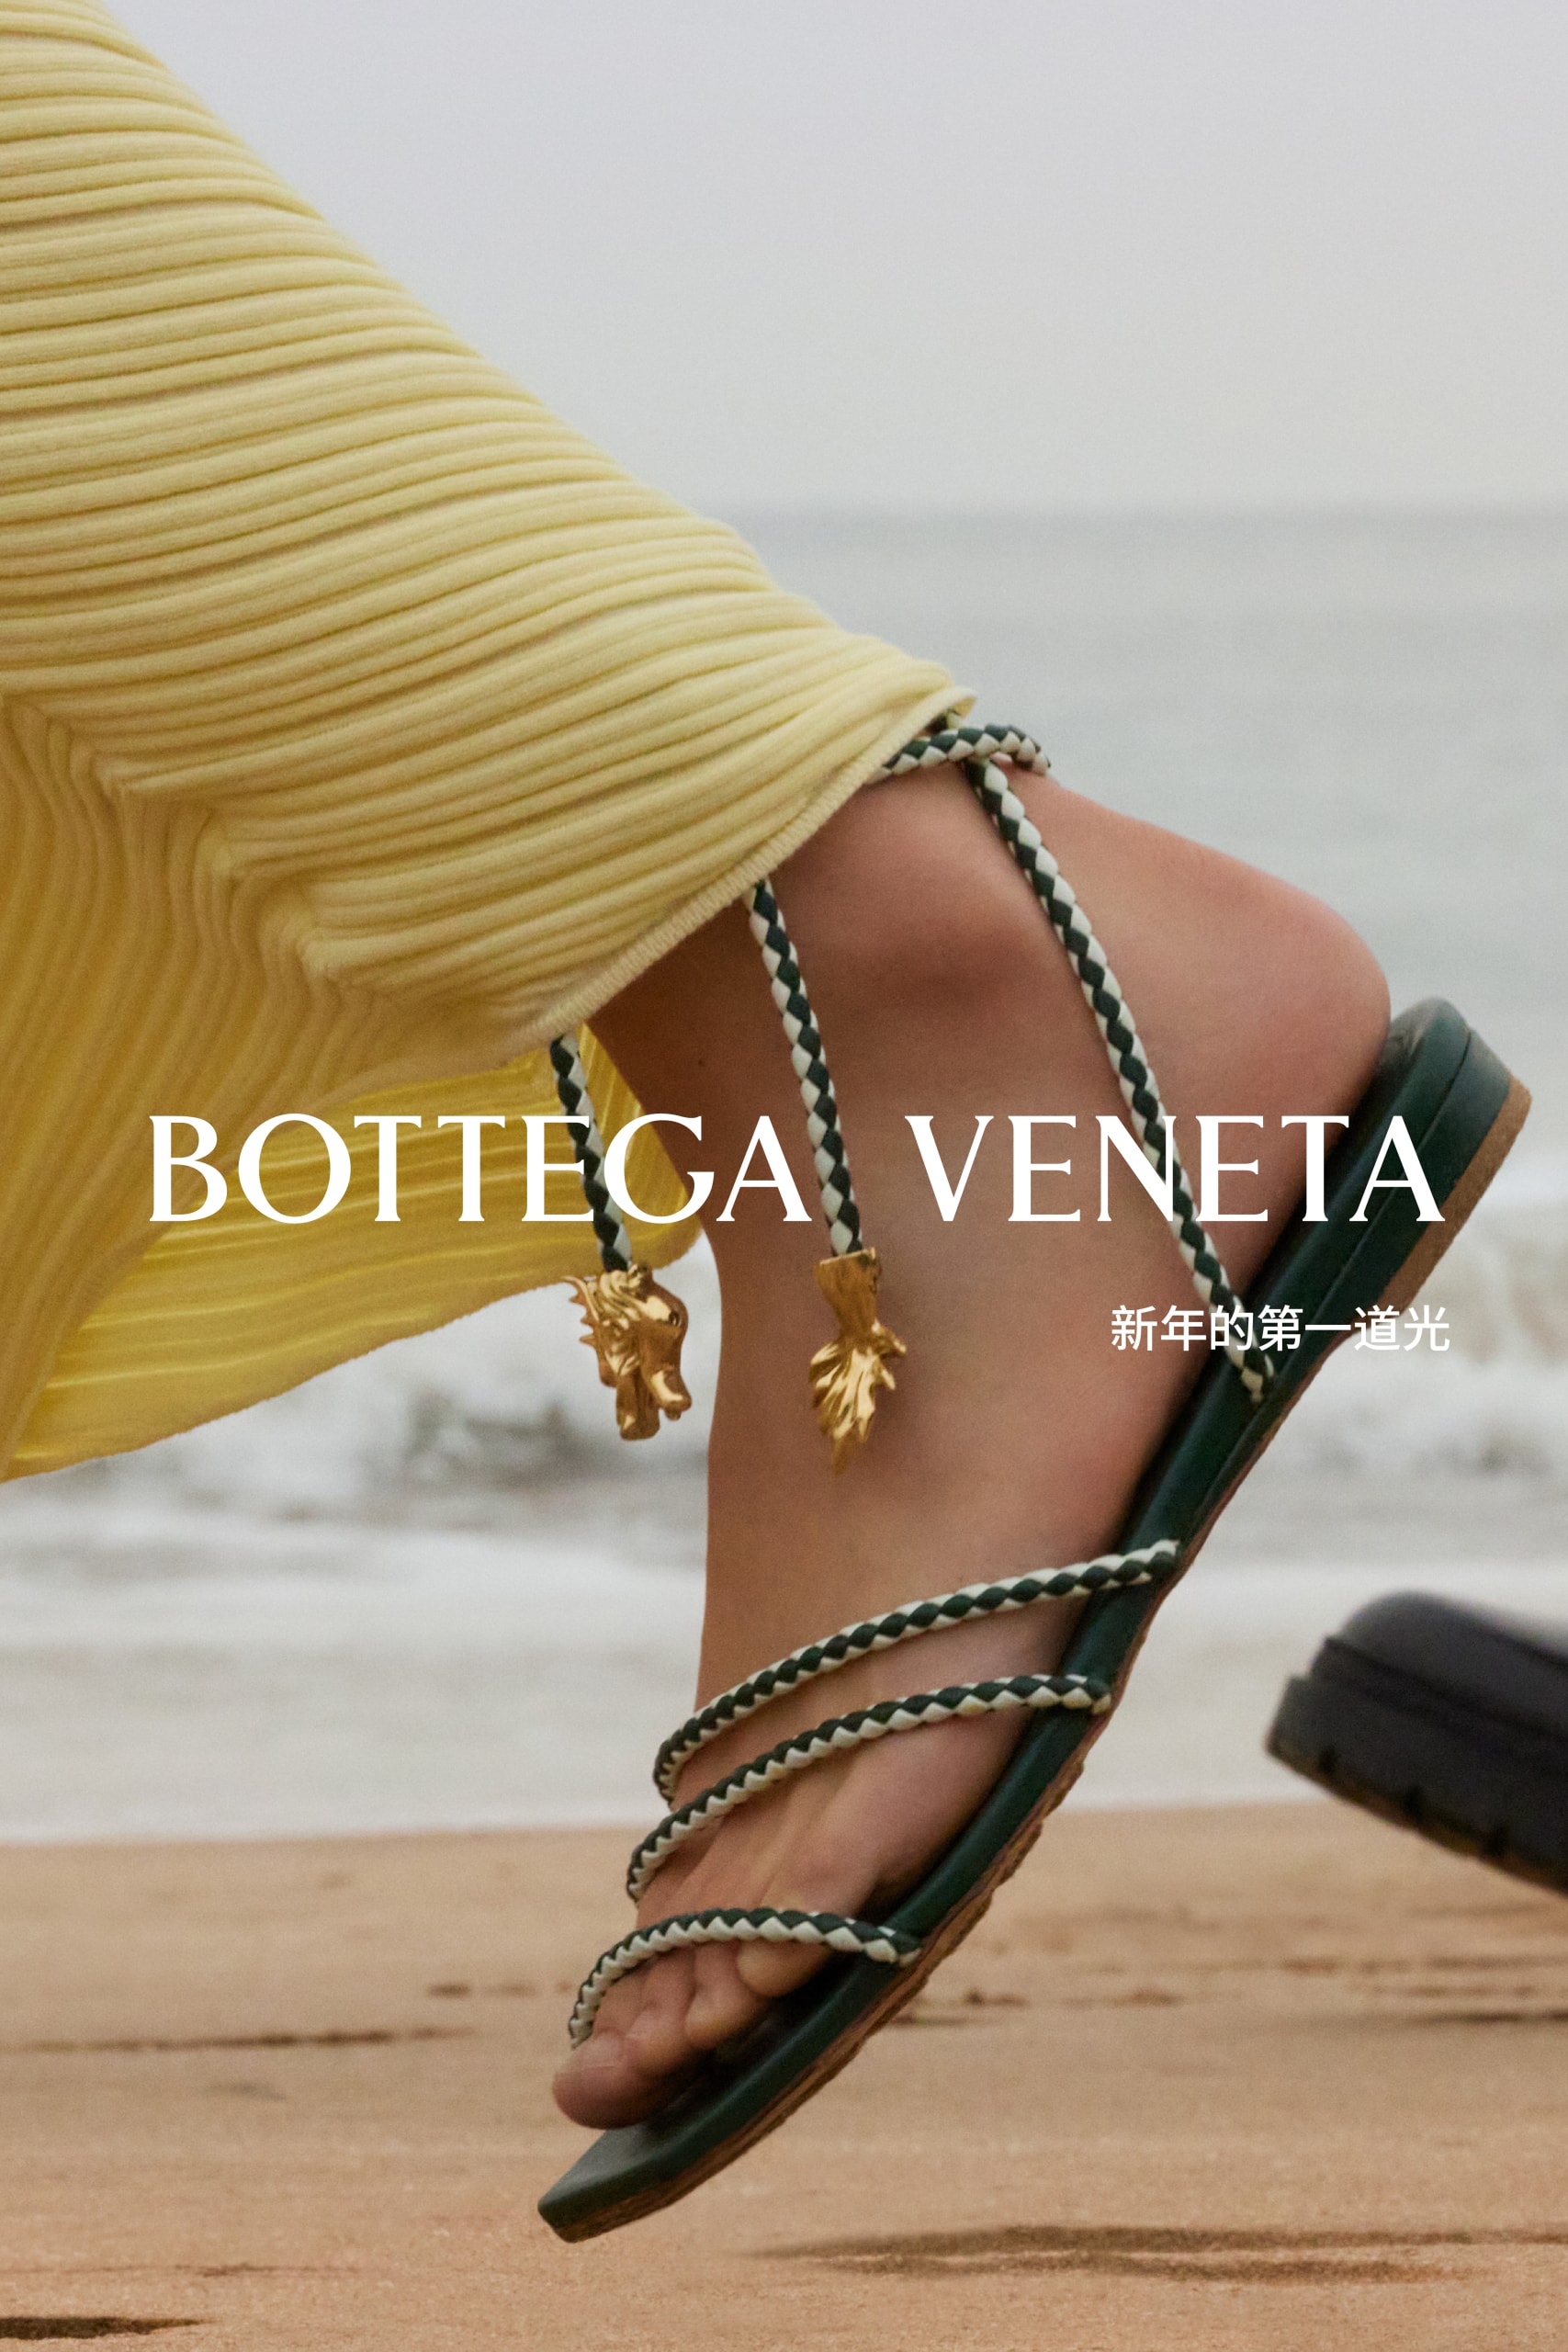 Bottega Veneta 发布农历新年企划《新年的第一道光》